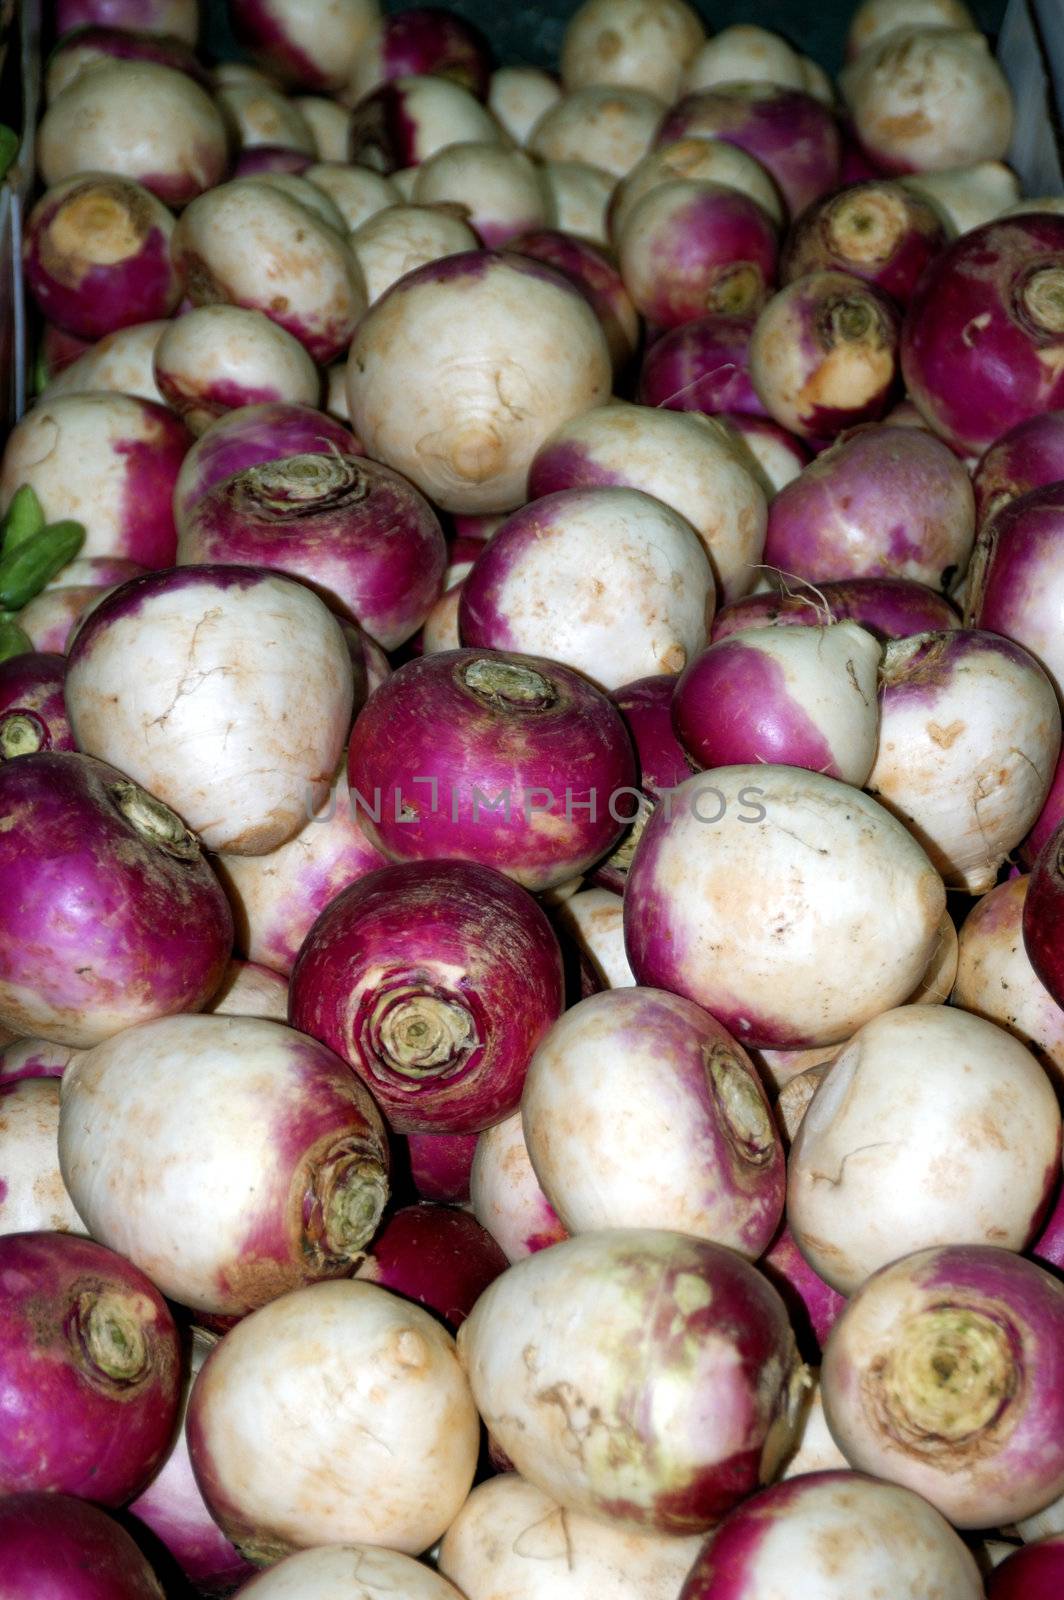 Turnips by pazham